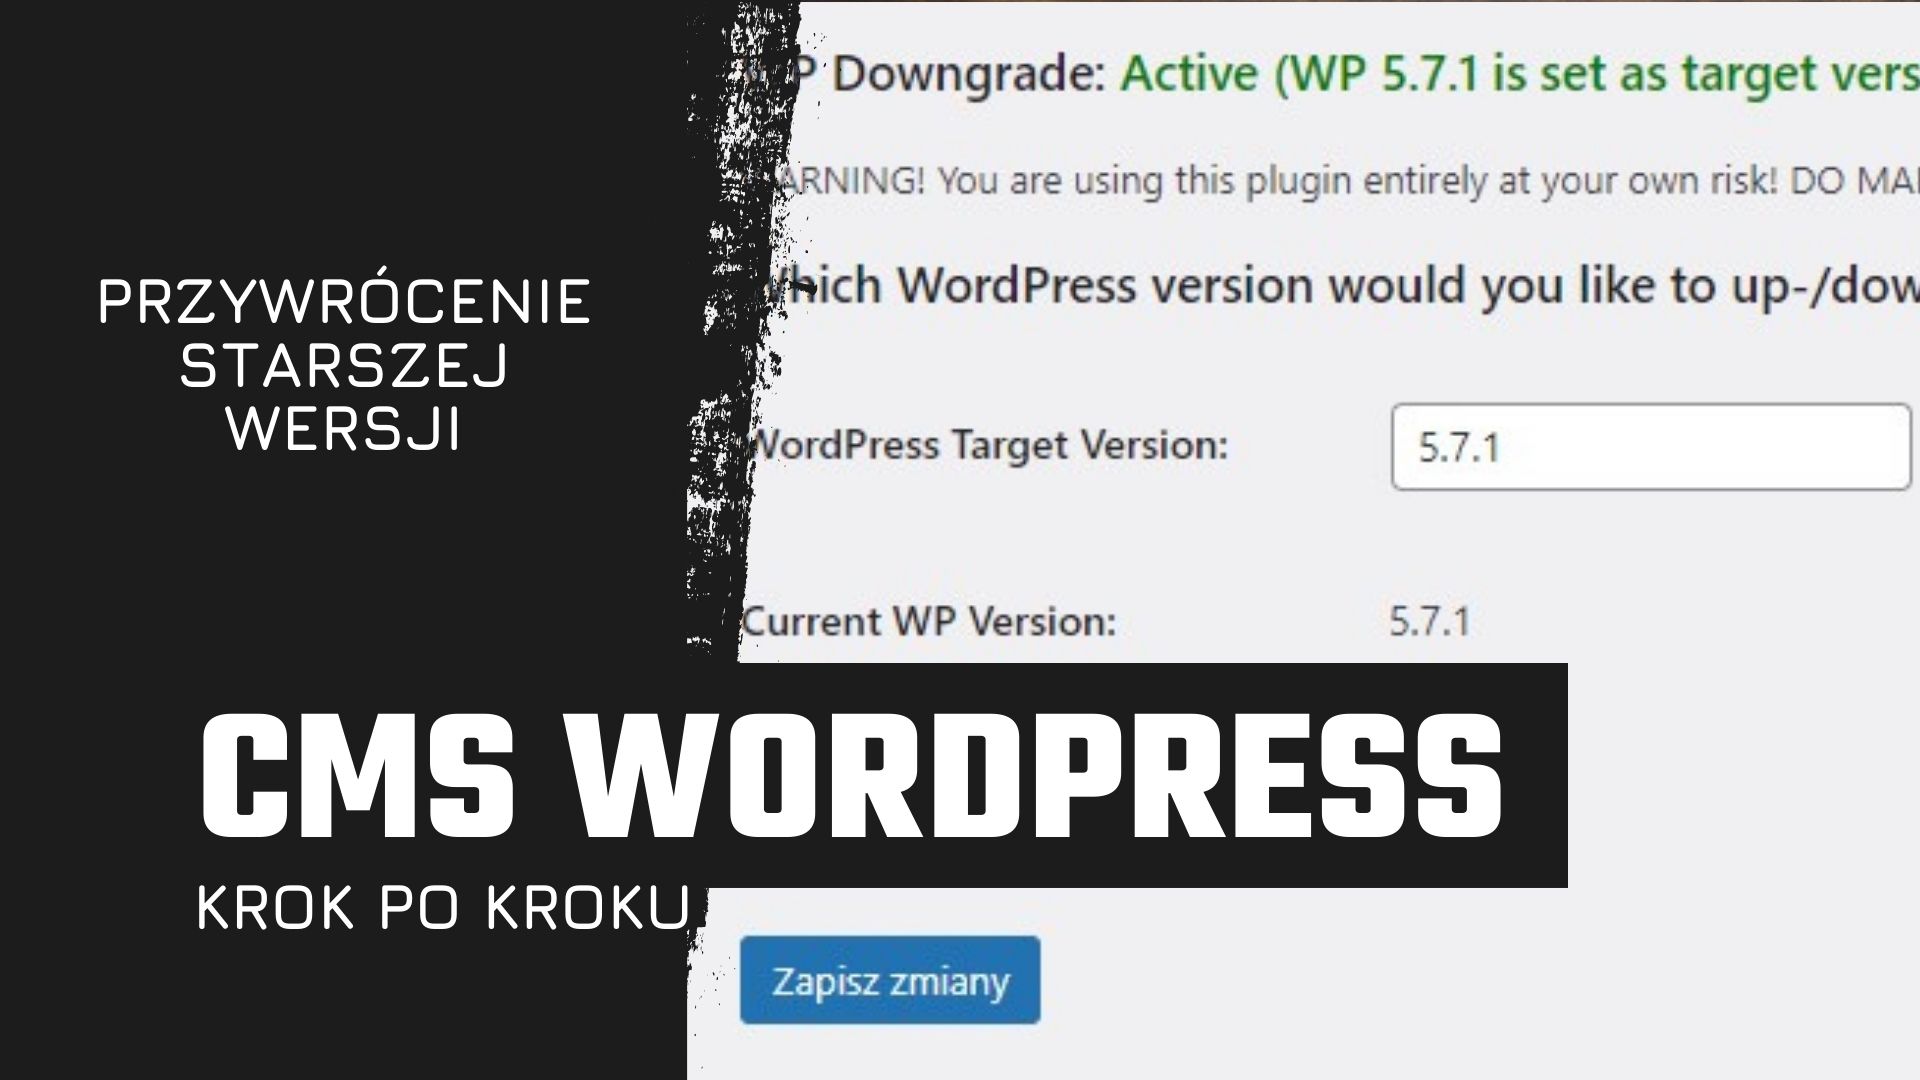 Przywrócenie starszej wersji CMS Wordpress - krok po kroku